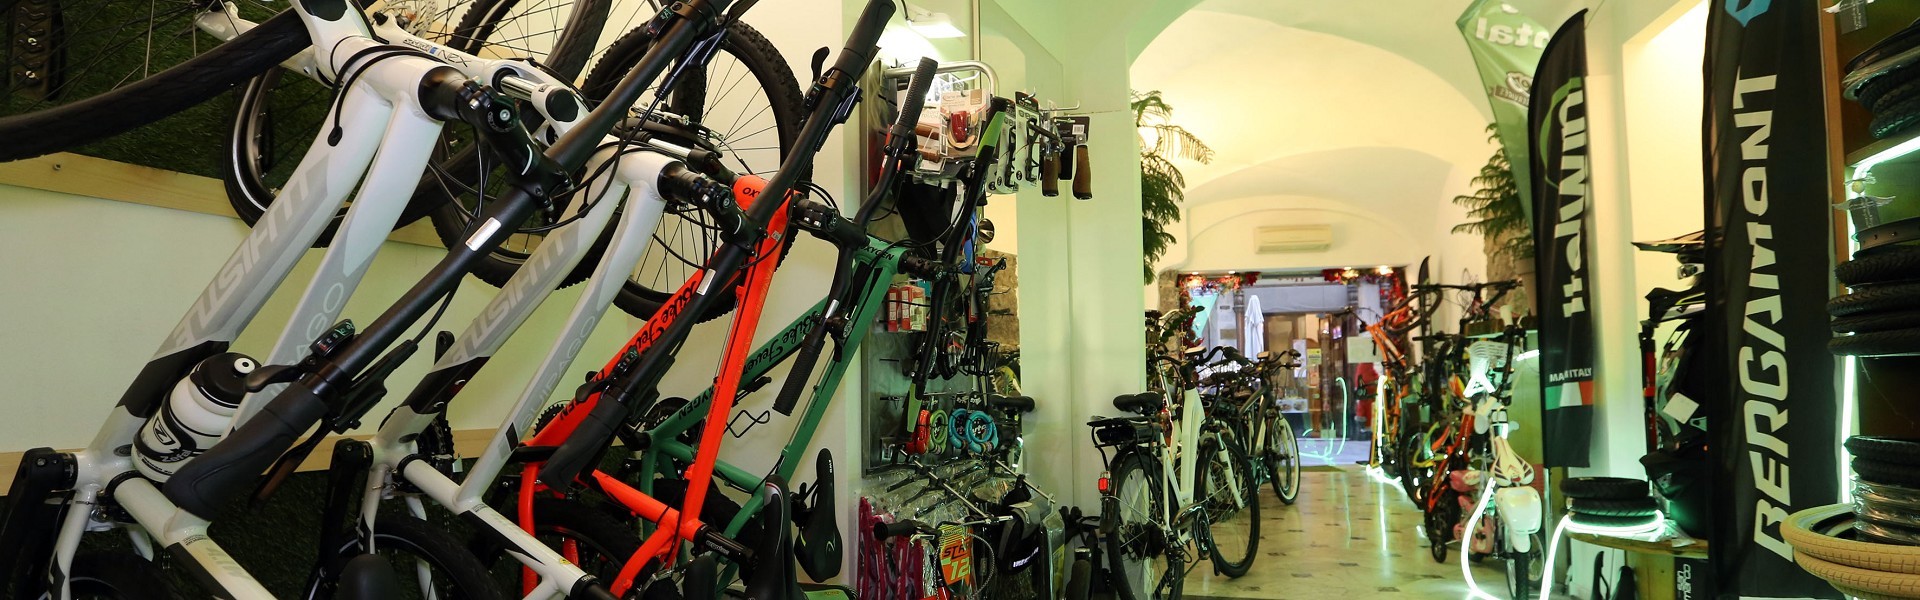 Bikefever ebike, ebike shop, bike shop negozio di biciclette, riparazione biciclette, noleggio